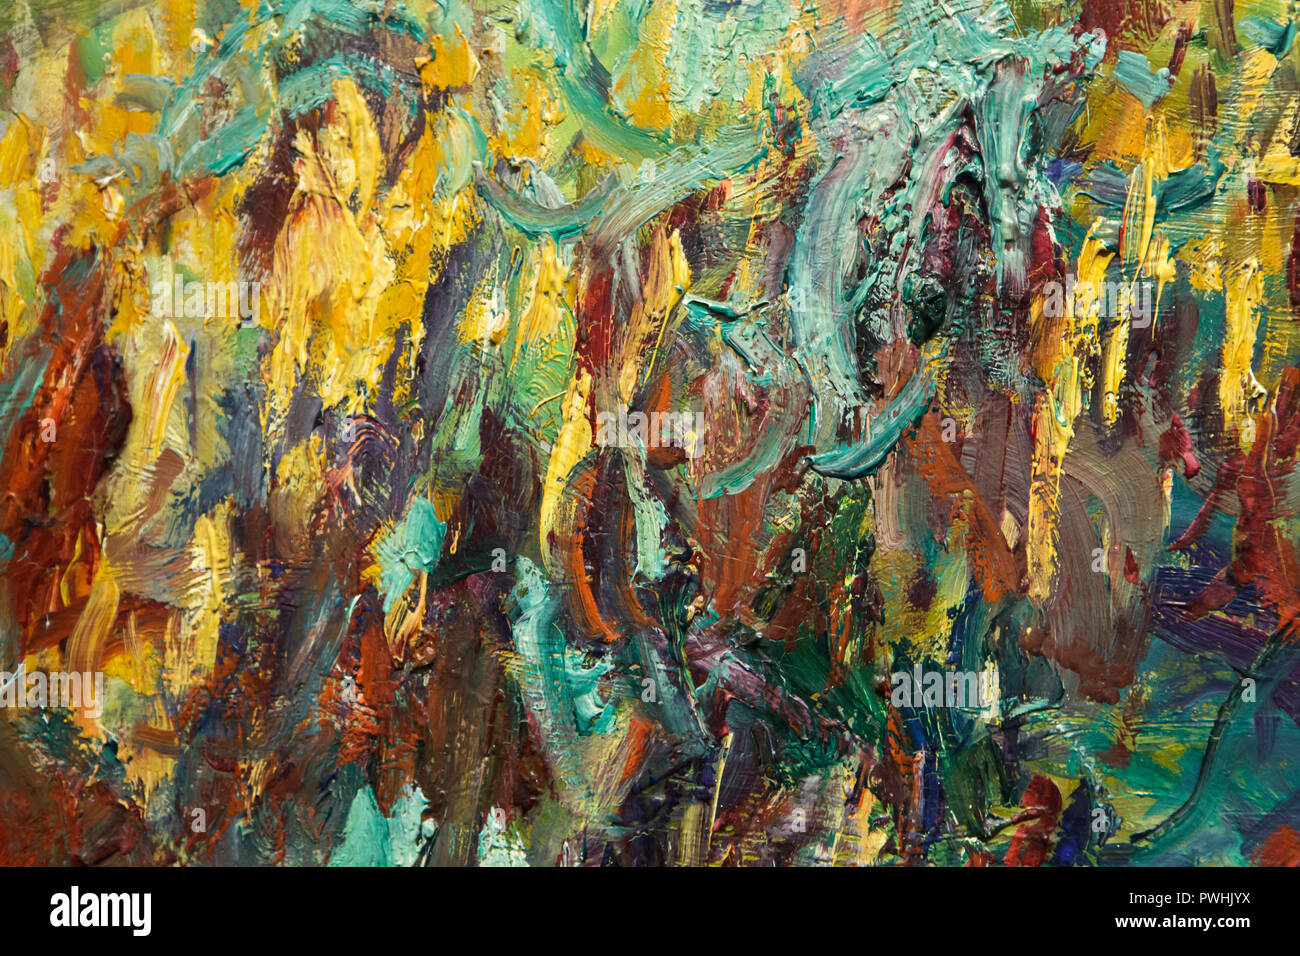 Dettaglio del dipinto 'ponte giapponese' (1918-1924) dal francese pittore impressionista Claude Monet sul display alla sua retrospettiva nel Museo Albertina di Vienna in Austria. La mostra dedicata al fondatore della francese pittura impressionista corre fino al 6 gennaio 2019. Foto Stock